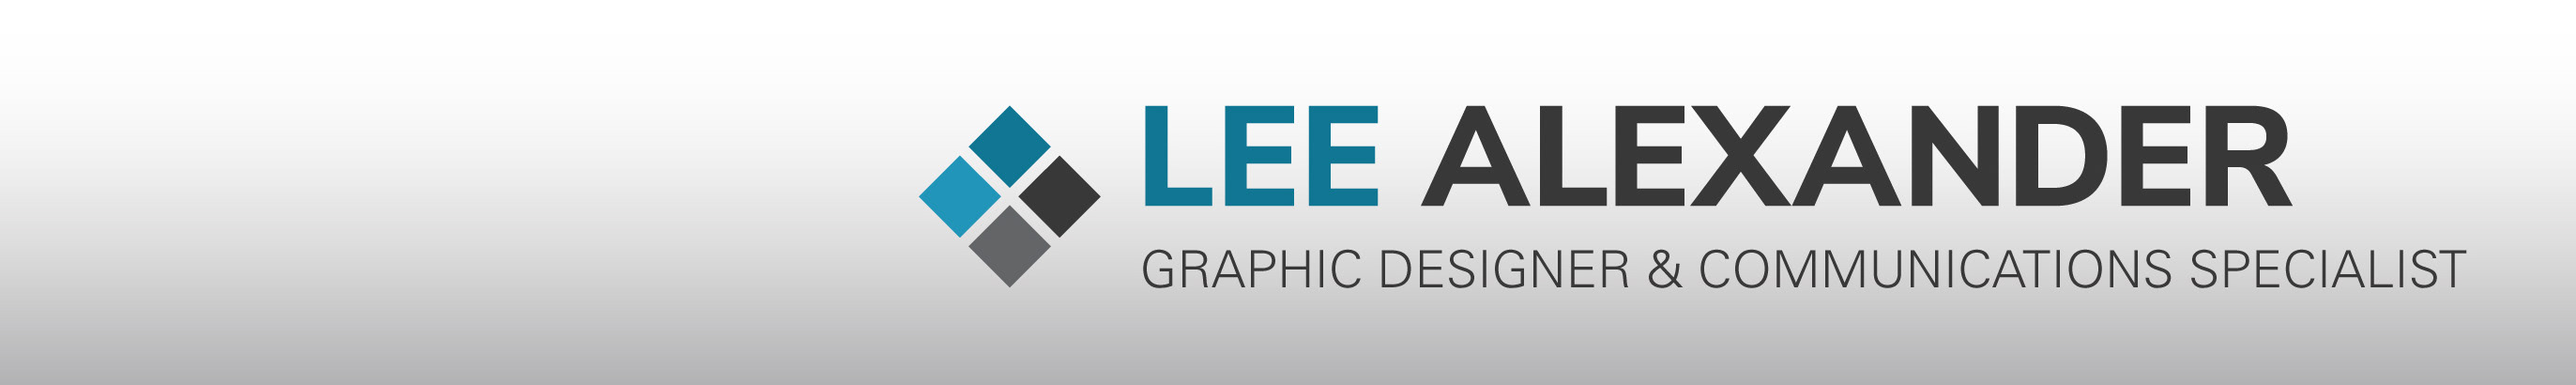 Lee Alexander profil başlığı